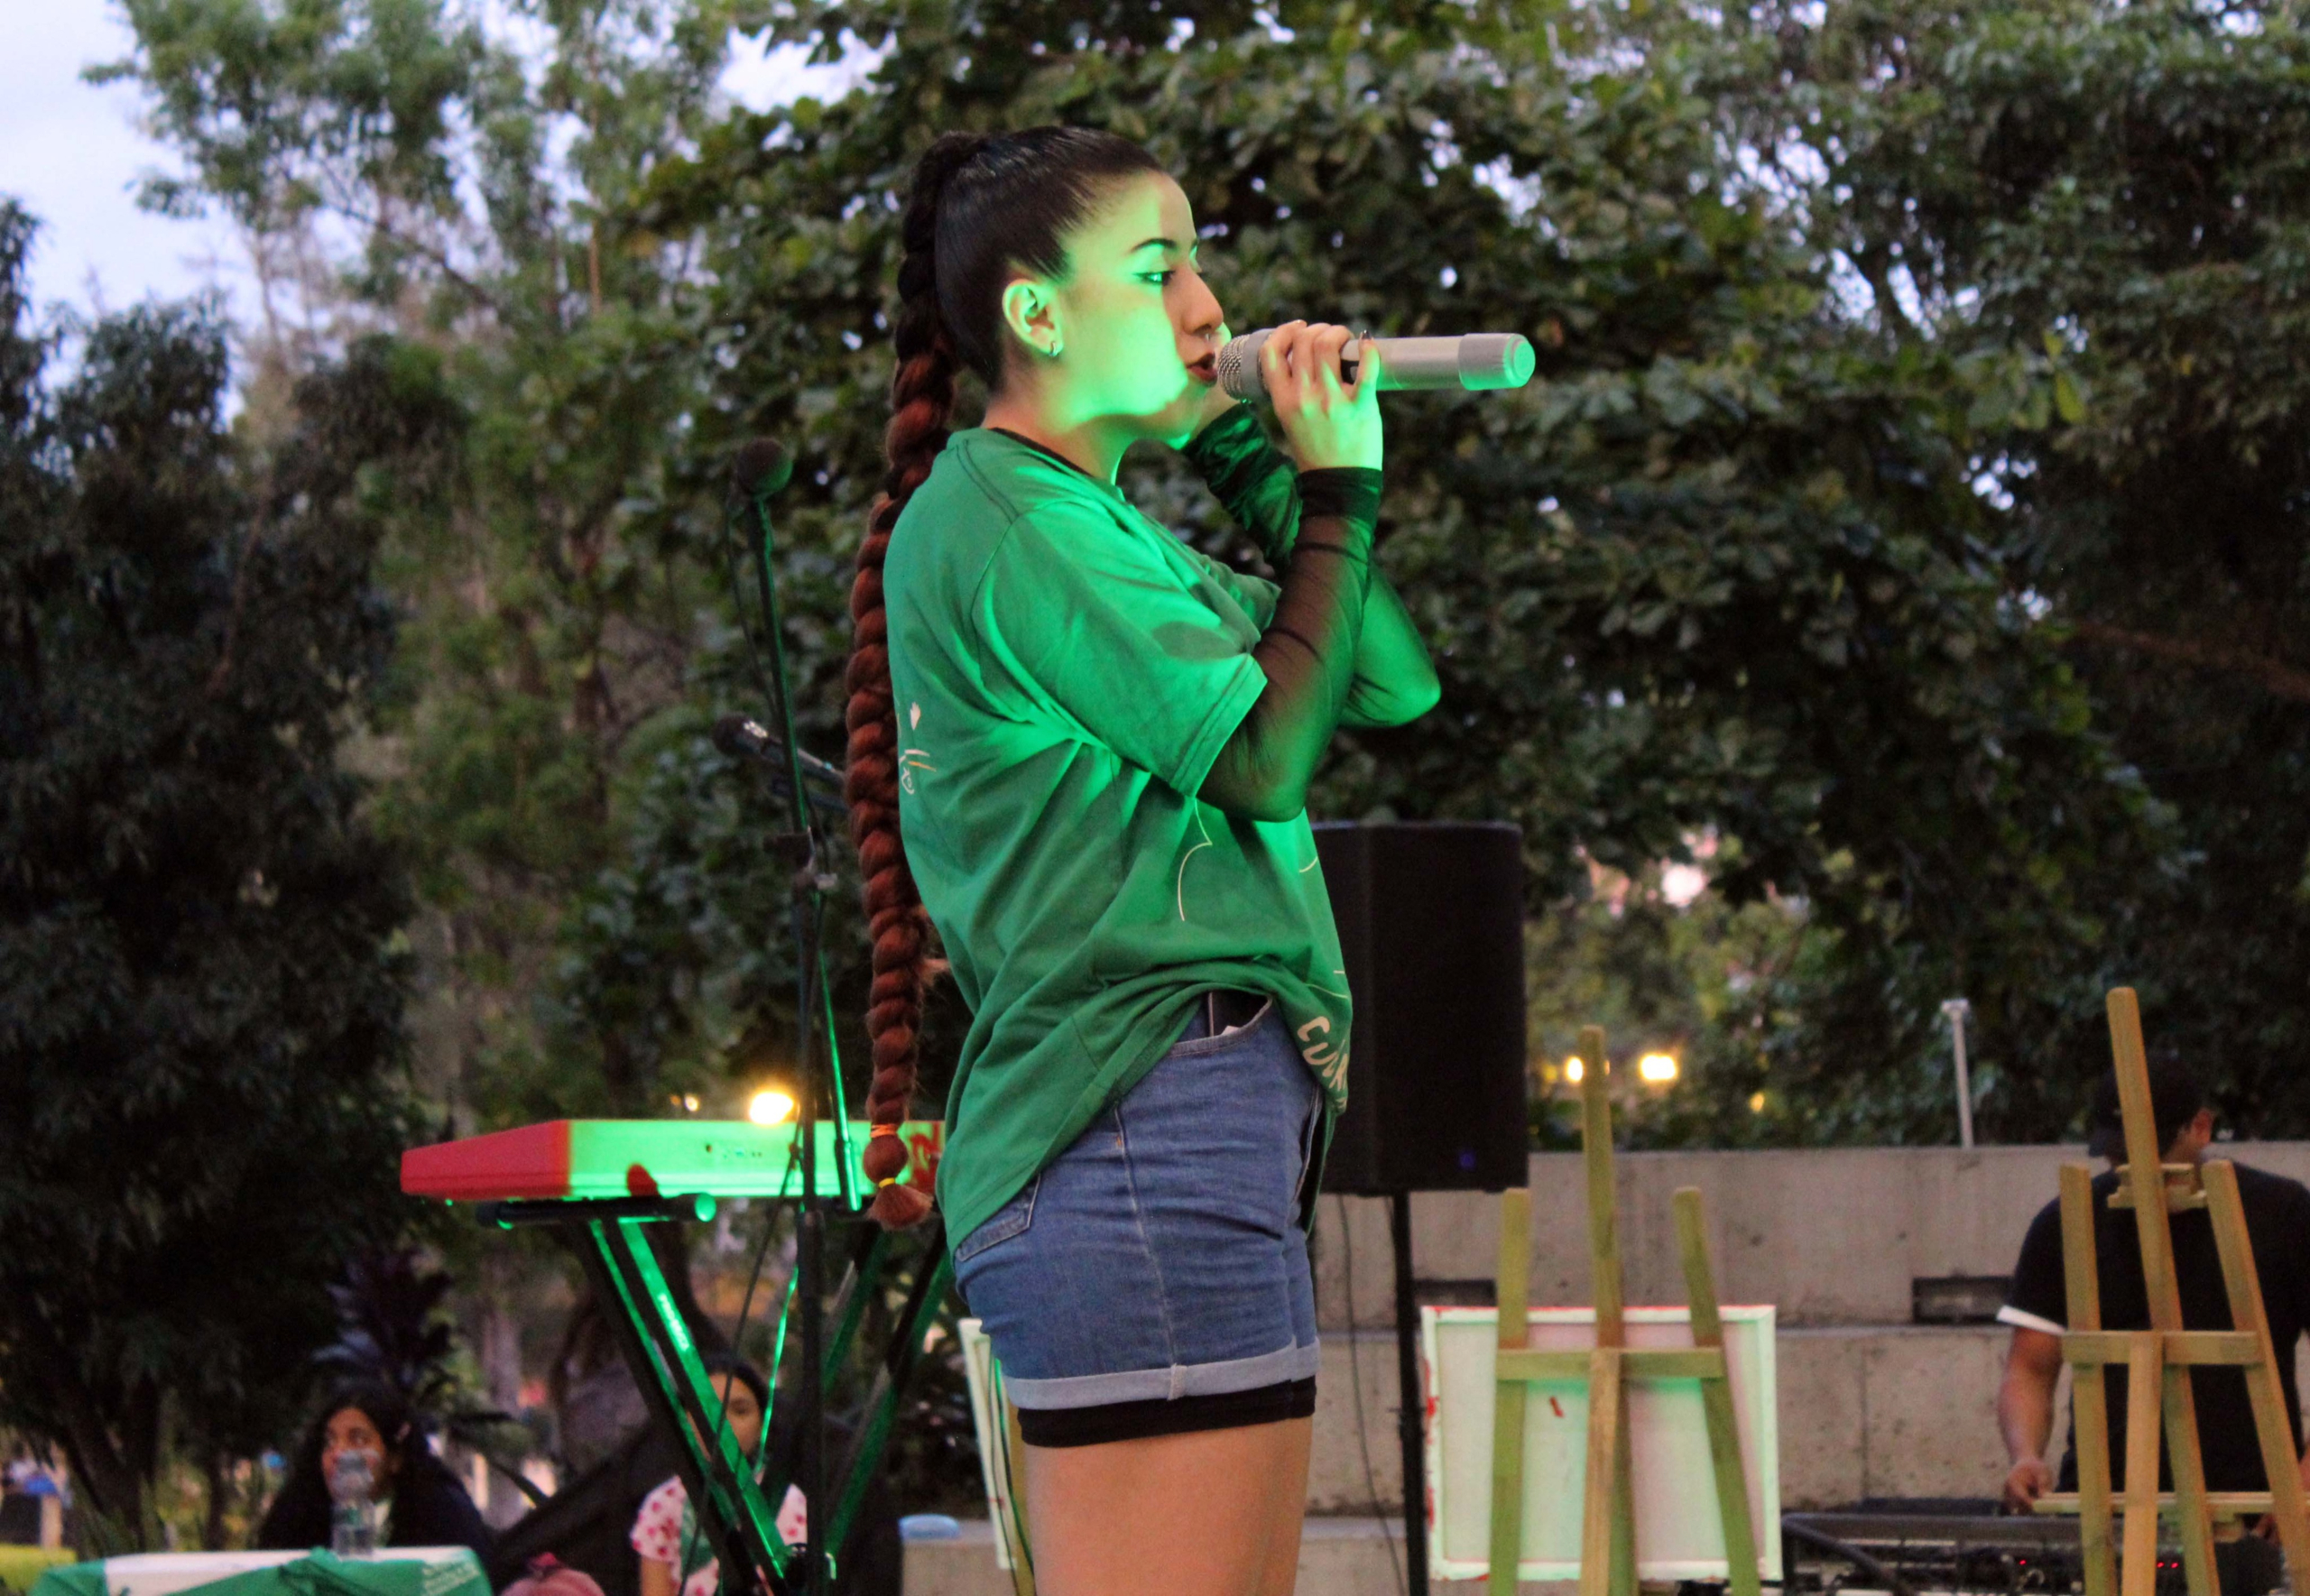 Queen de Hip Hop Femenino ganó el primer lugar en canto.
Fotografía. Ana Gómez / Revista La Brújula